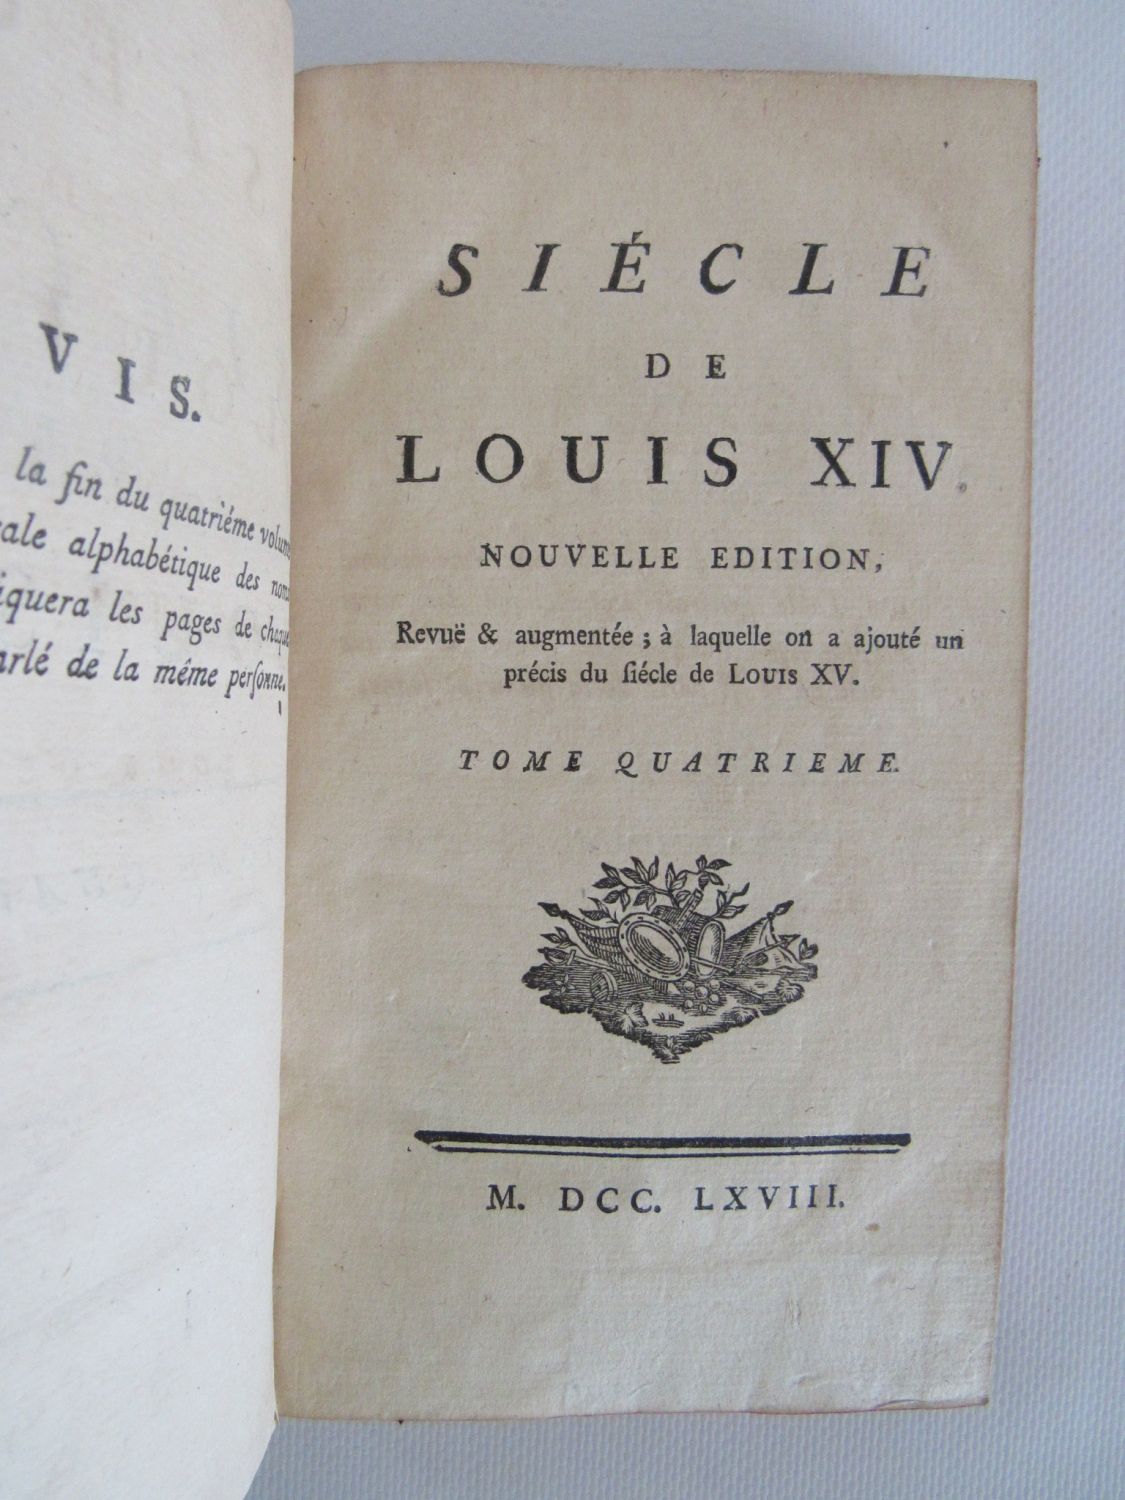 Le Siècle de Louis XIV - Voltaire – Editions Phoenix